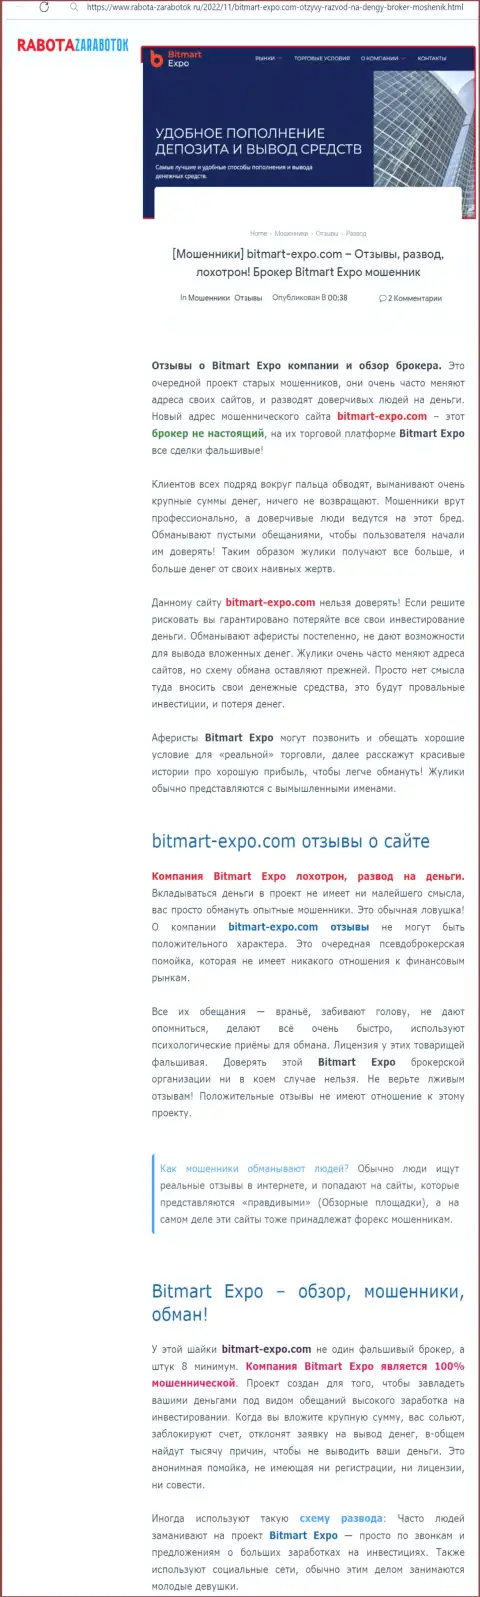 Обзор мошеннических деяний Bitmart Expo, который позаимствован на одном из сайтов-отзовиков